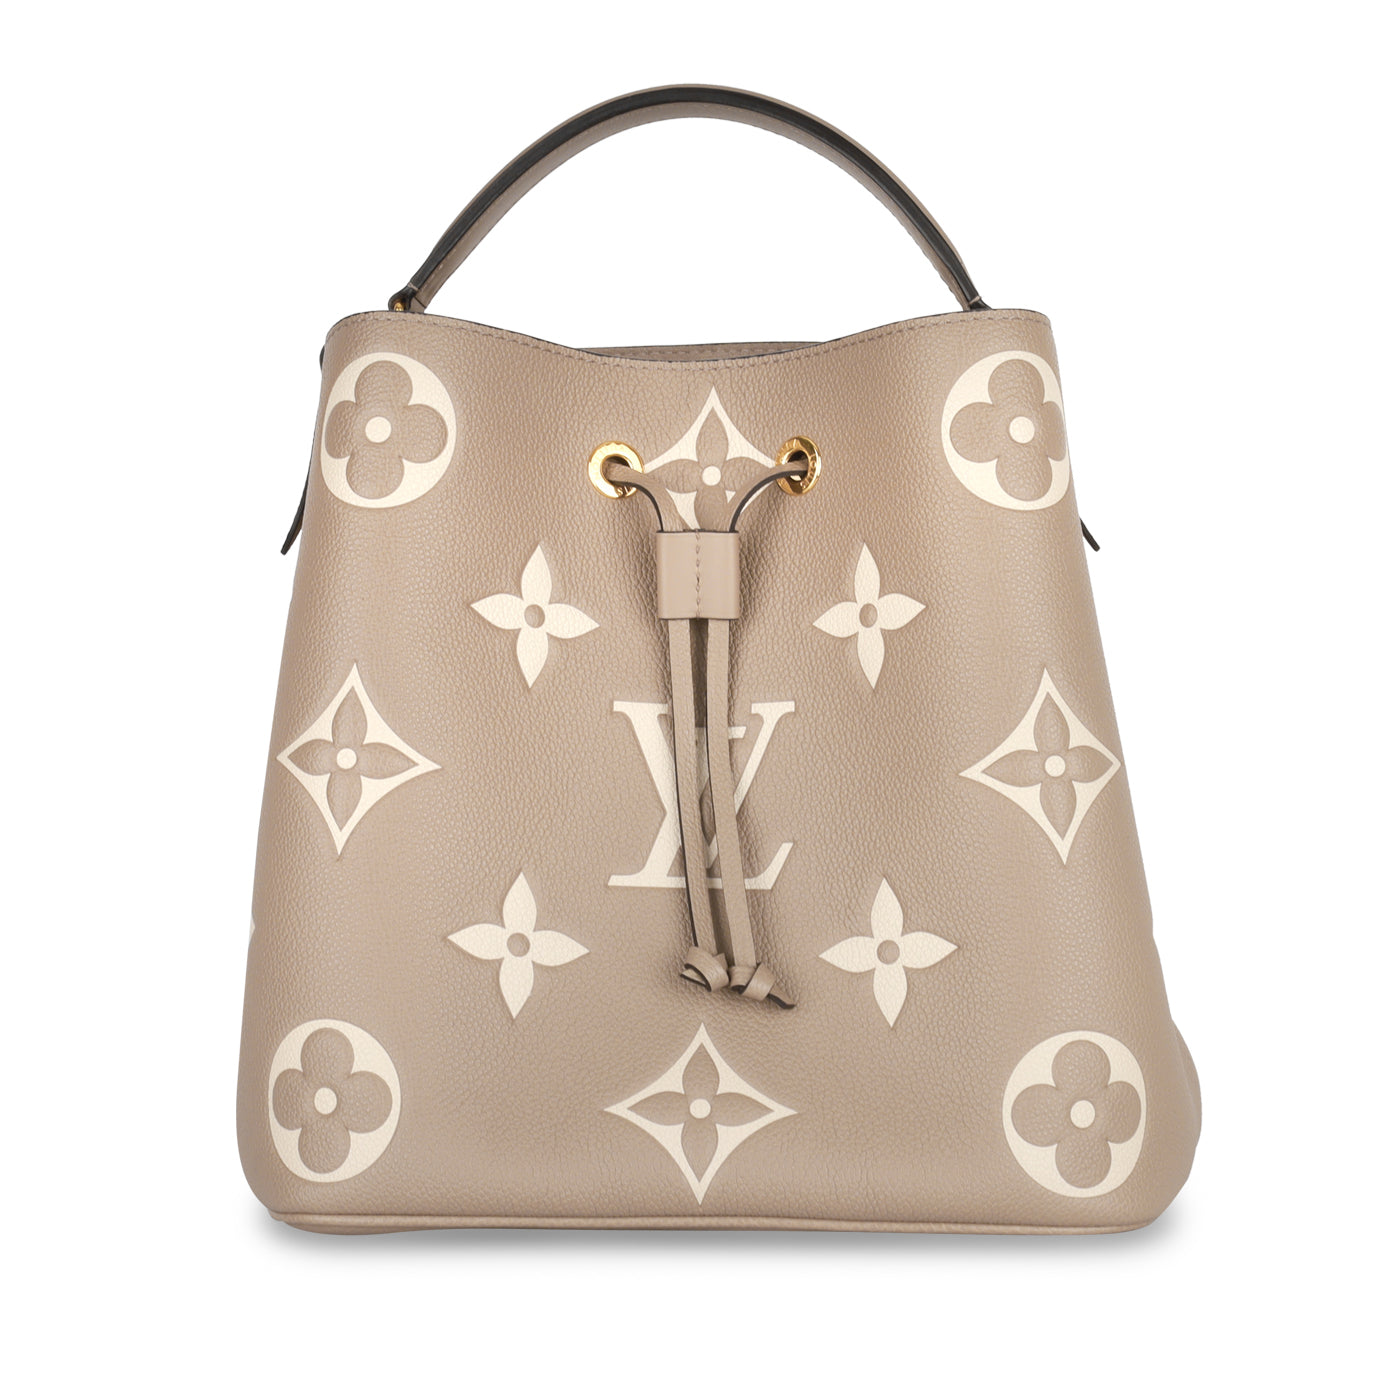 Louis Vuitton - NeoNoe Bucket Bag - Tourterelle/Créme Empreinte - GHW -  Immaculate